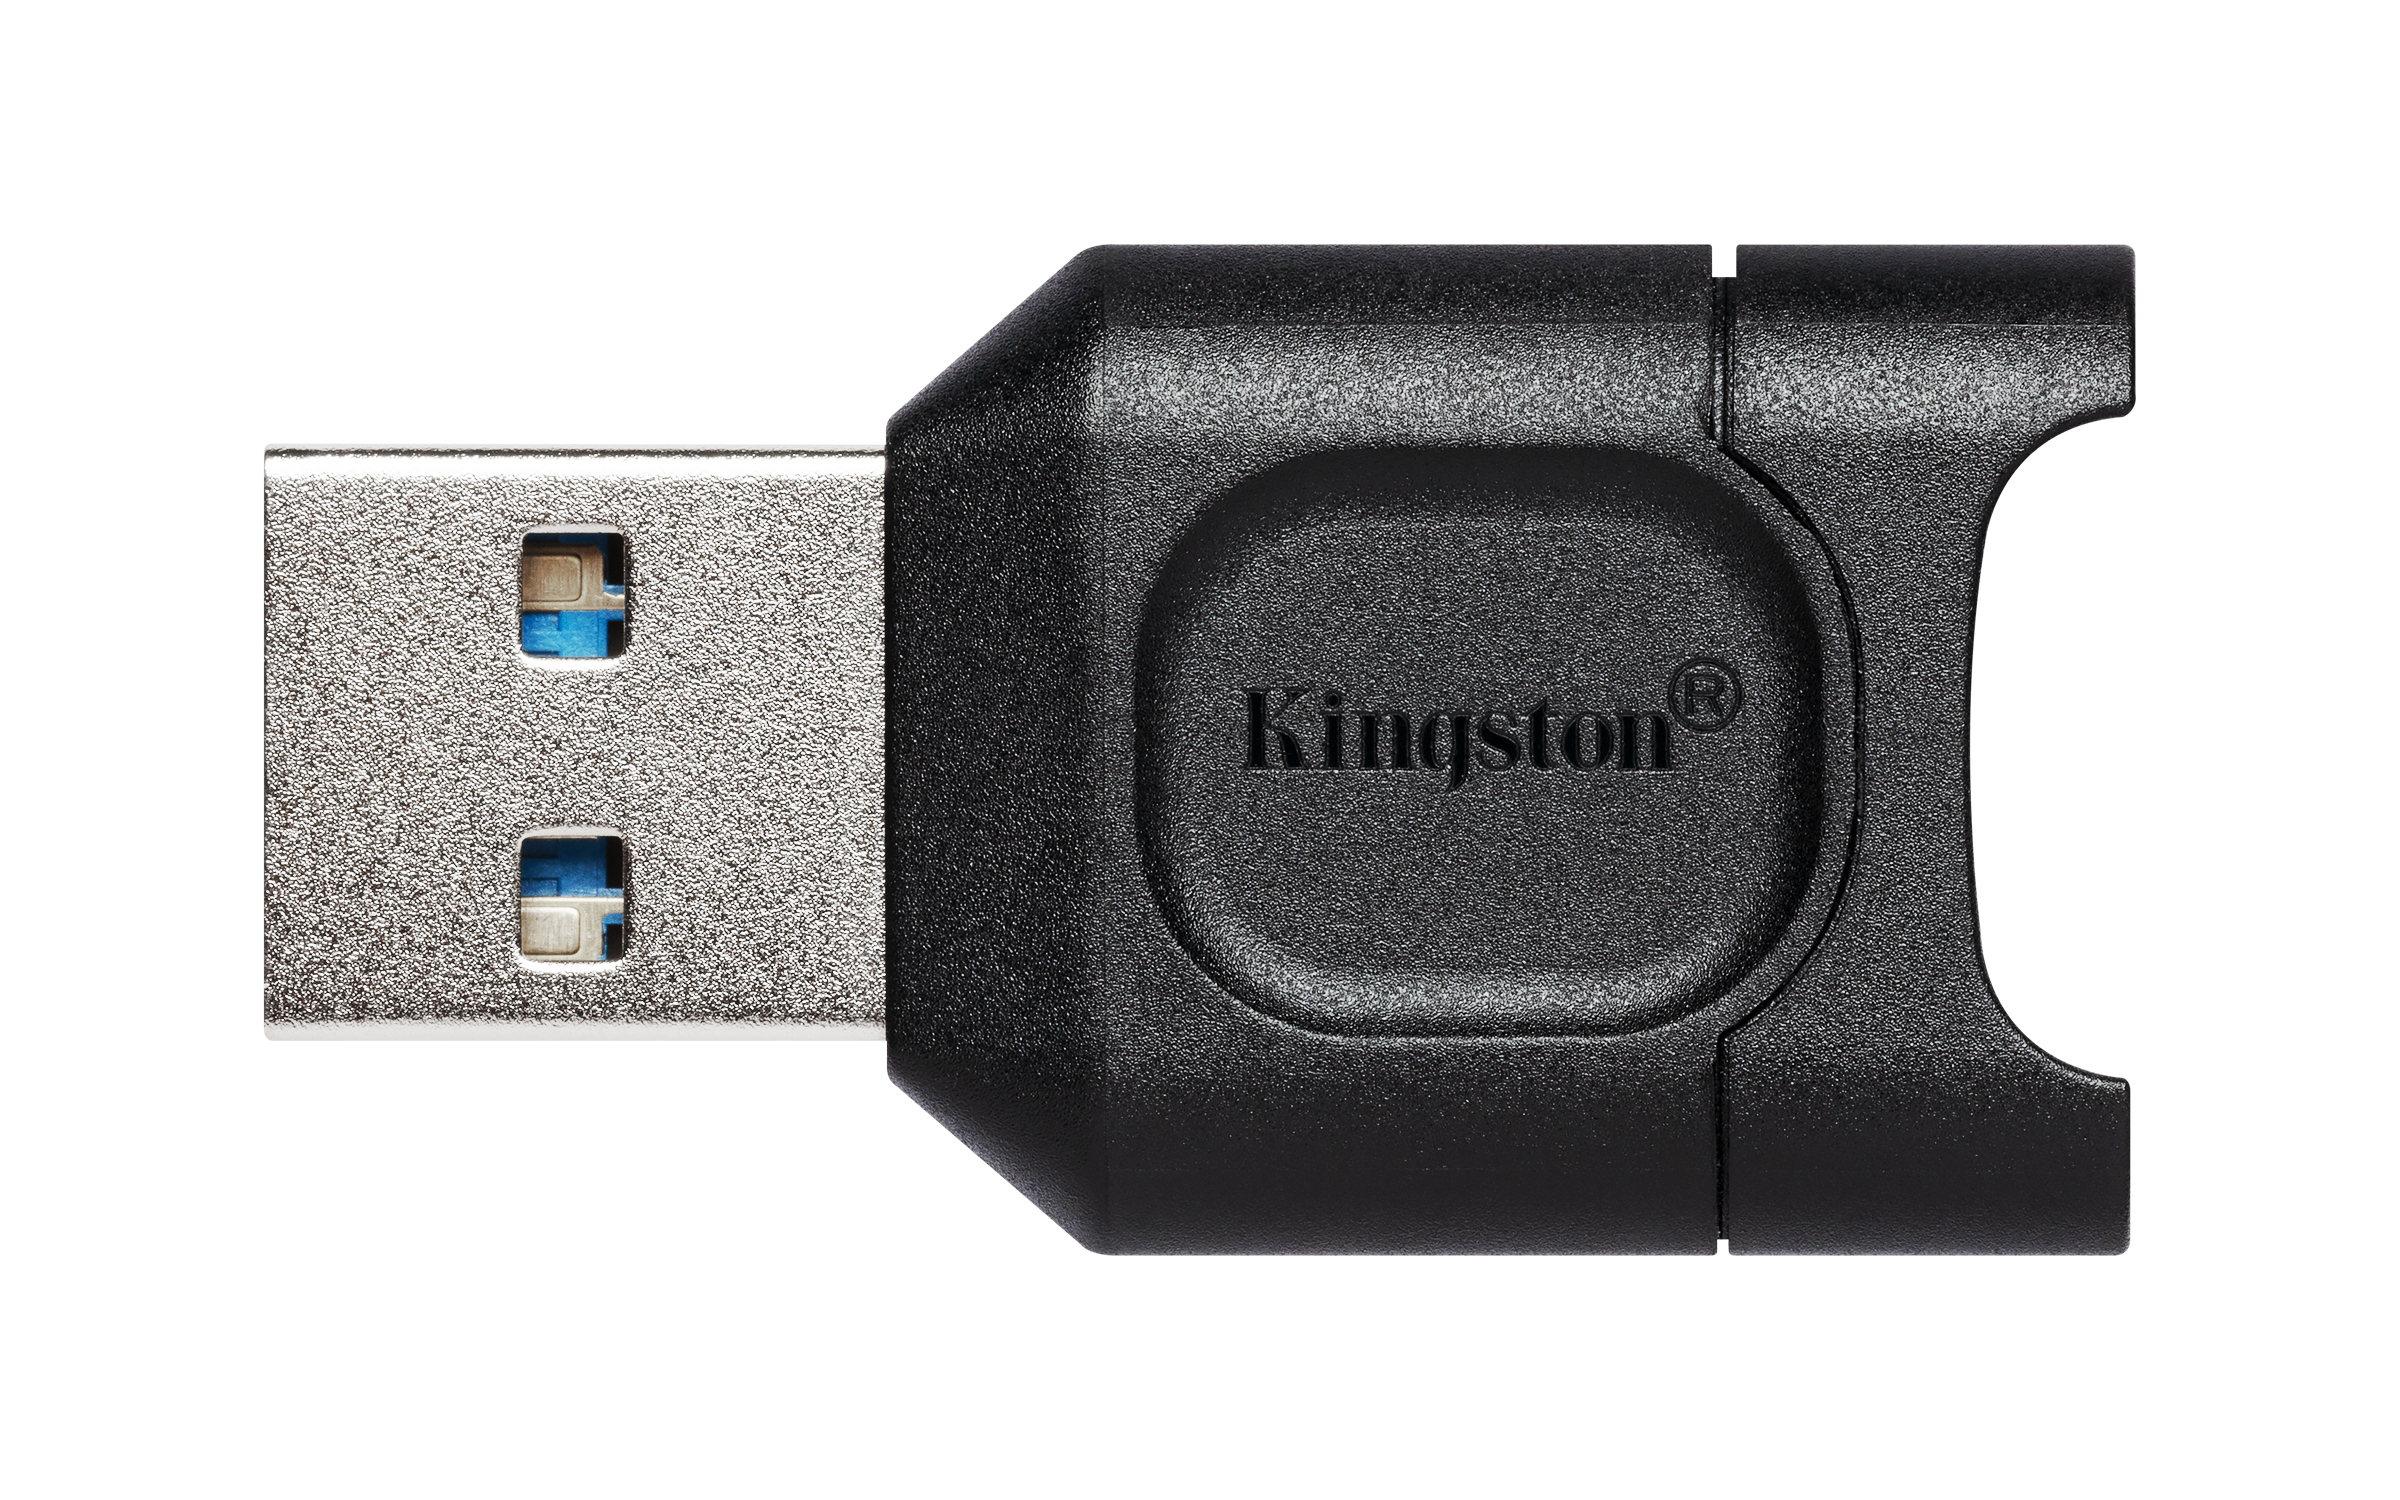 Kingston MobileLite Plus - Kartenleser (microSD, microSDHC, microSDXC, microSDHC UHS-I, microSDXC UHS-I, microSDHC UHS-II, microSDXC UHS-II)